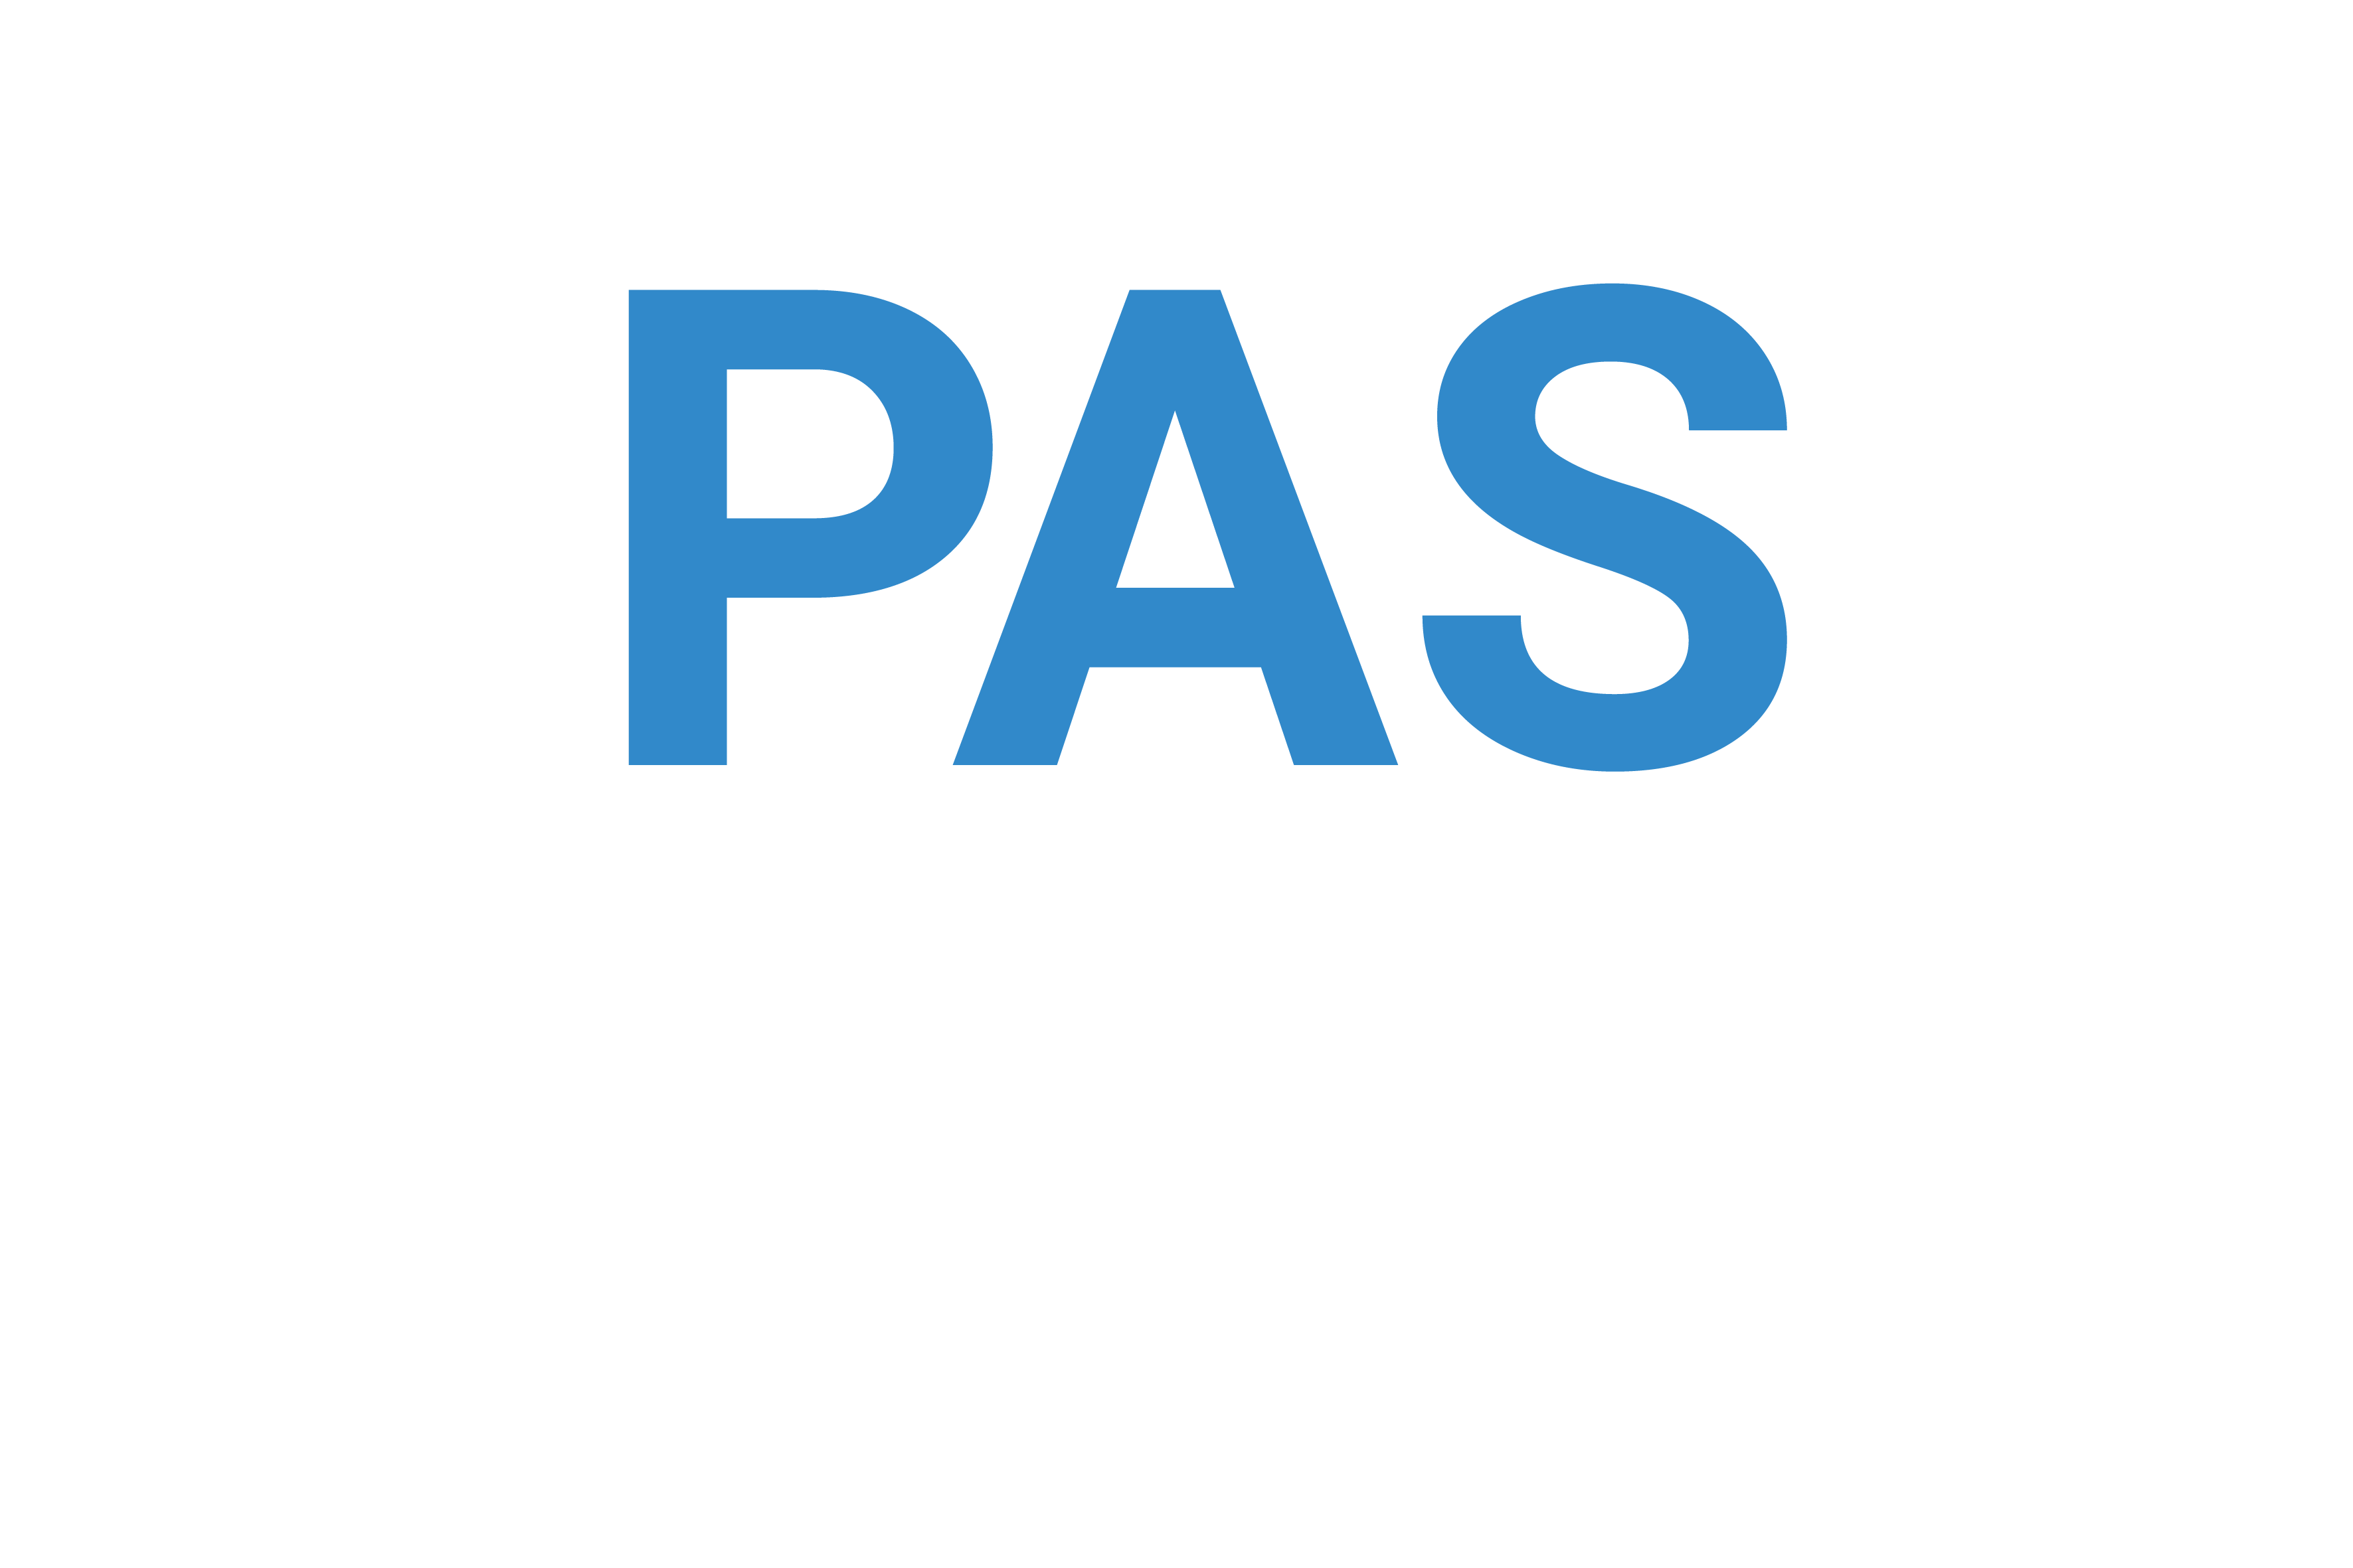 DIPAS Digitales Partizipationssystem